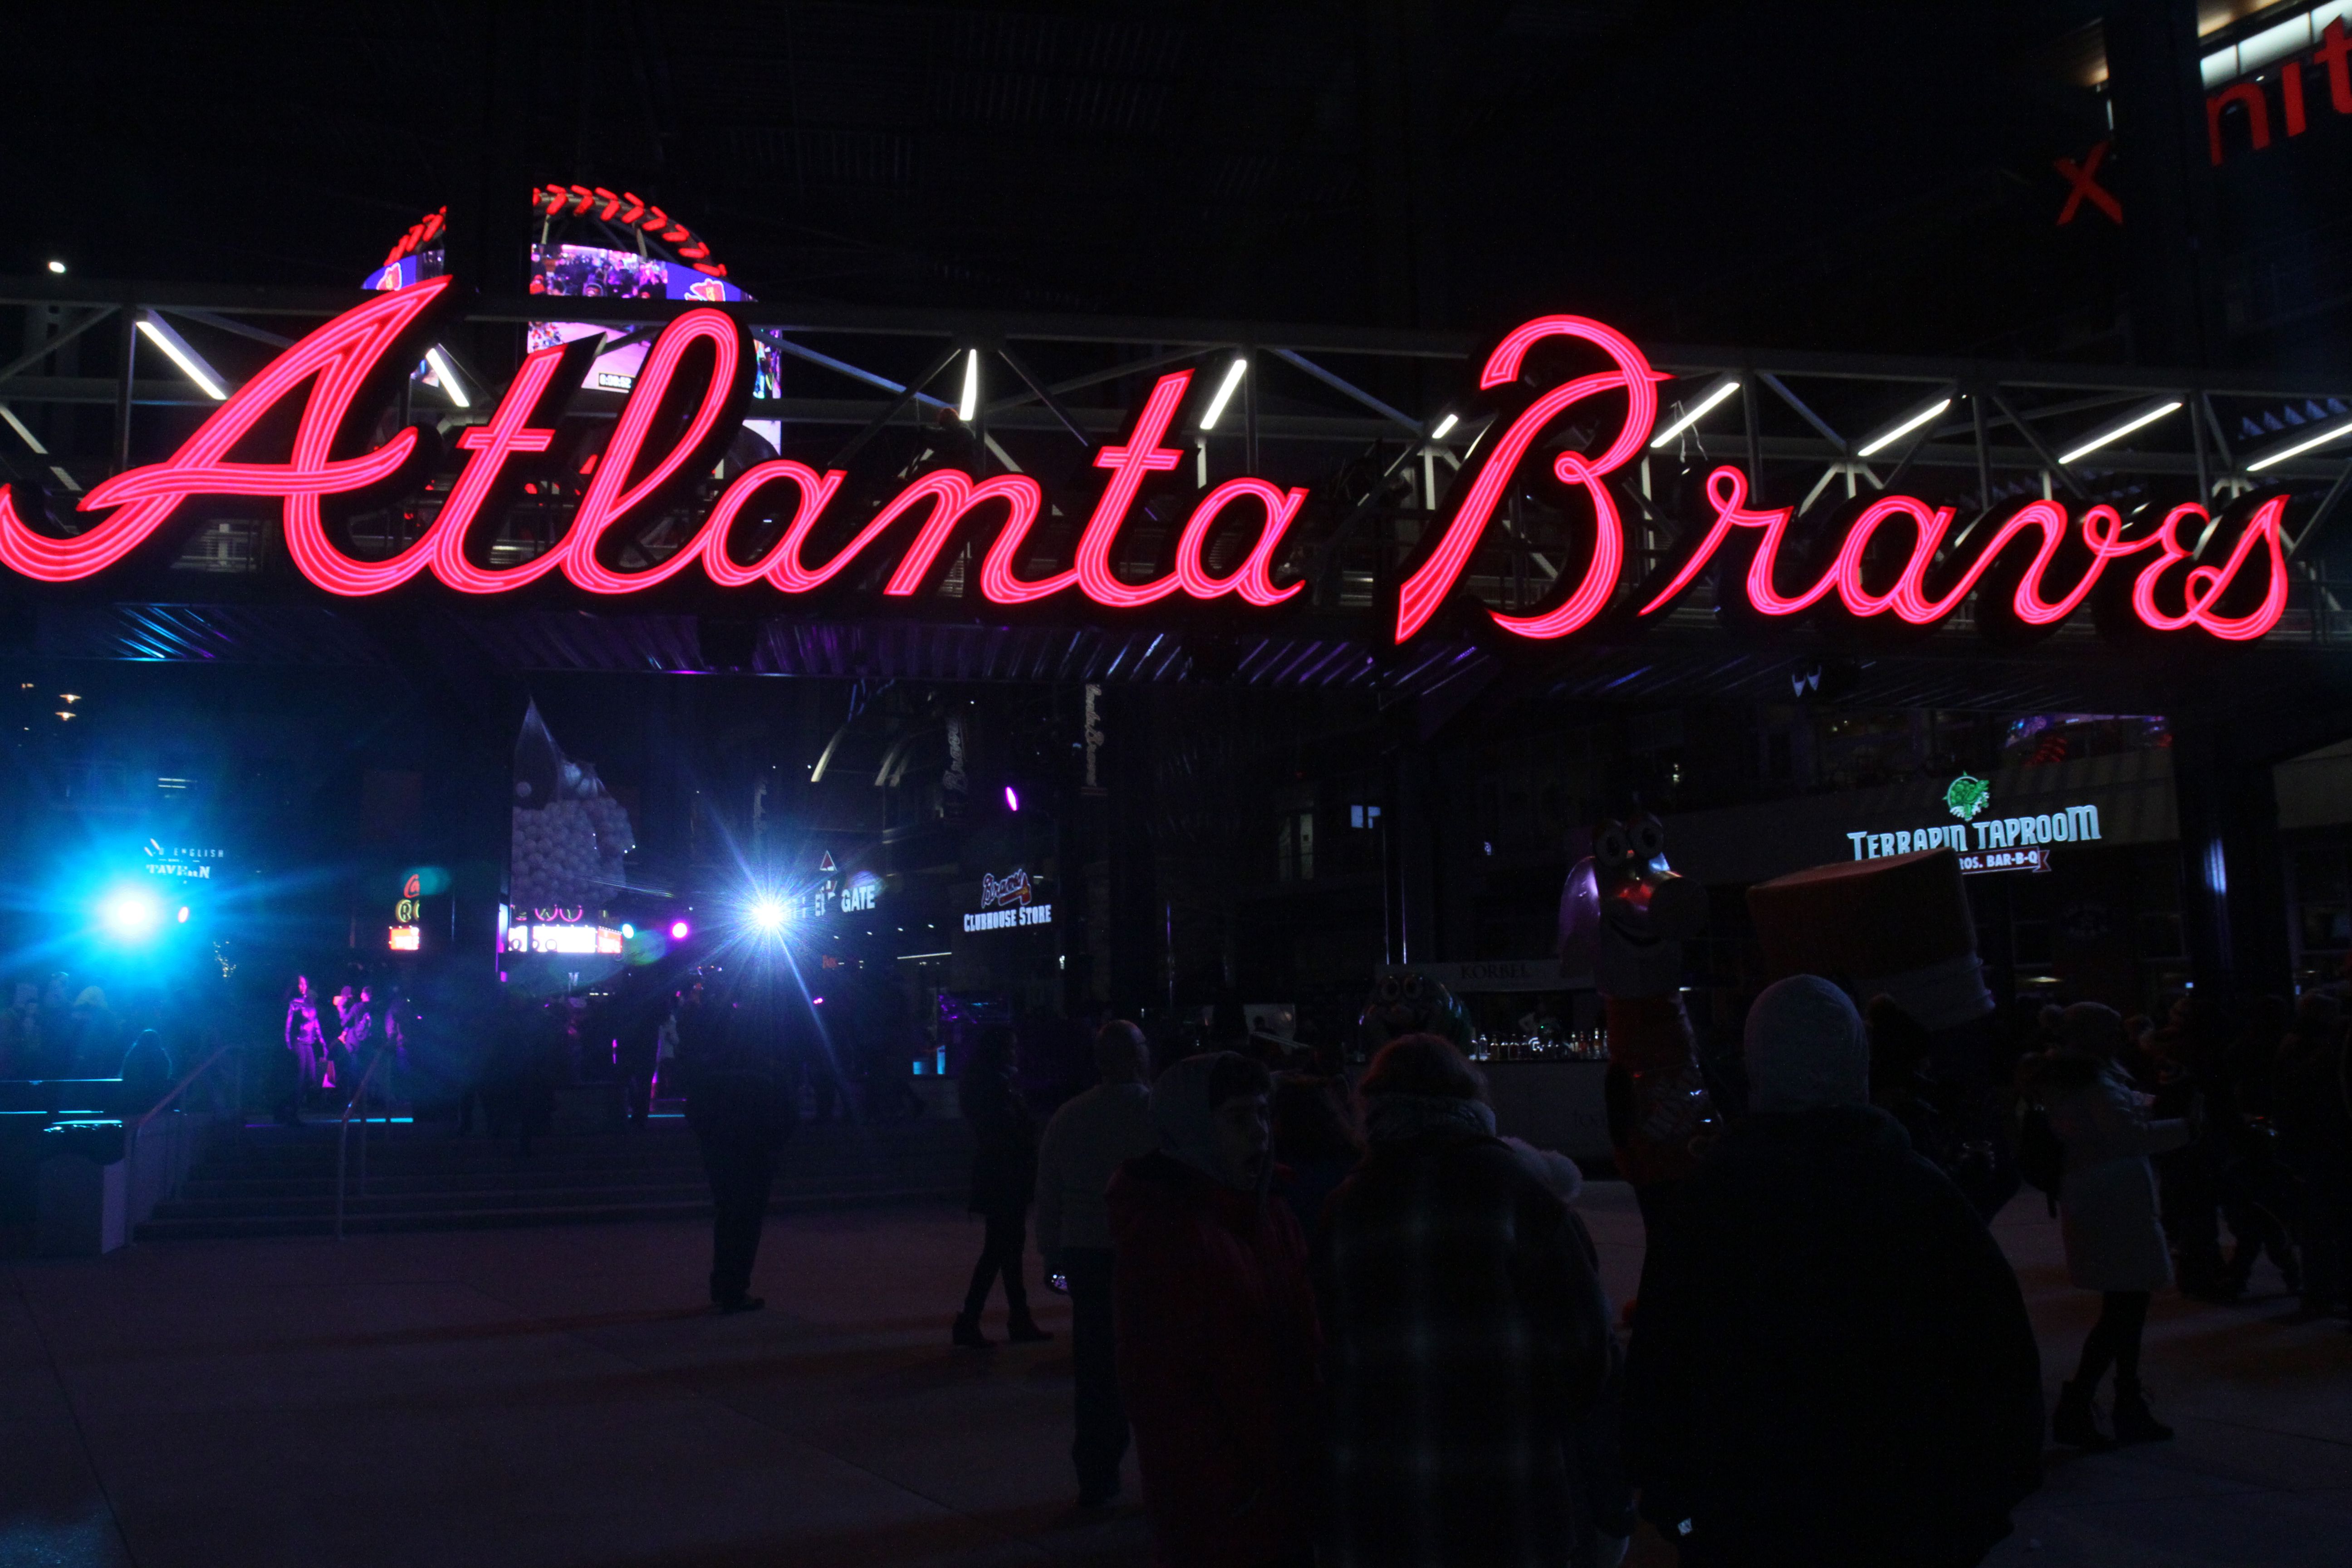 Atlanta Braves hosting playoff watch parties at The Battery Atlanta